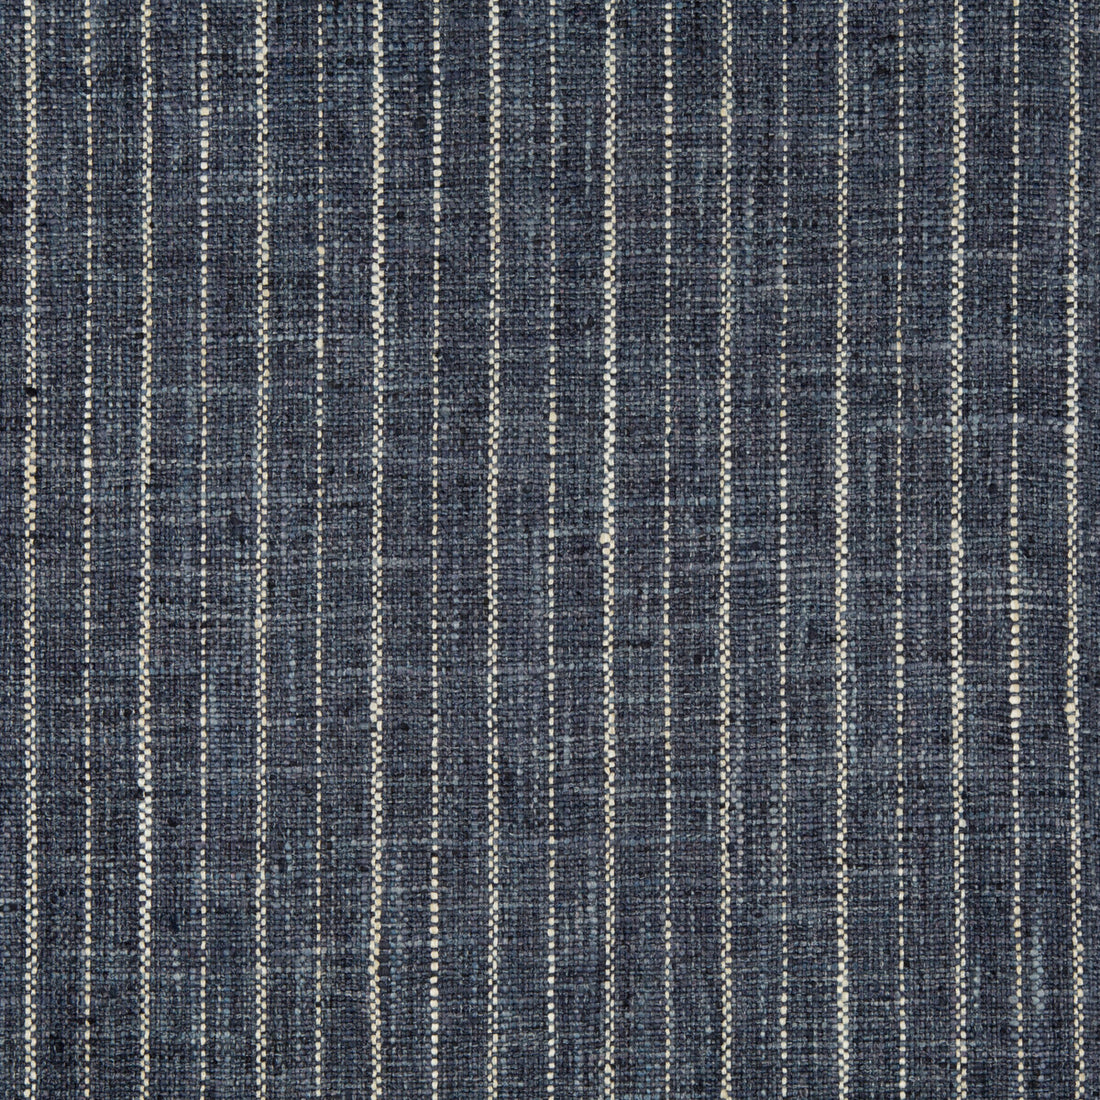 Kravet Basics fabric in 34984-50 color - pattern 34984.50.0 - by Kravet Basics